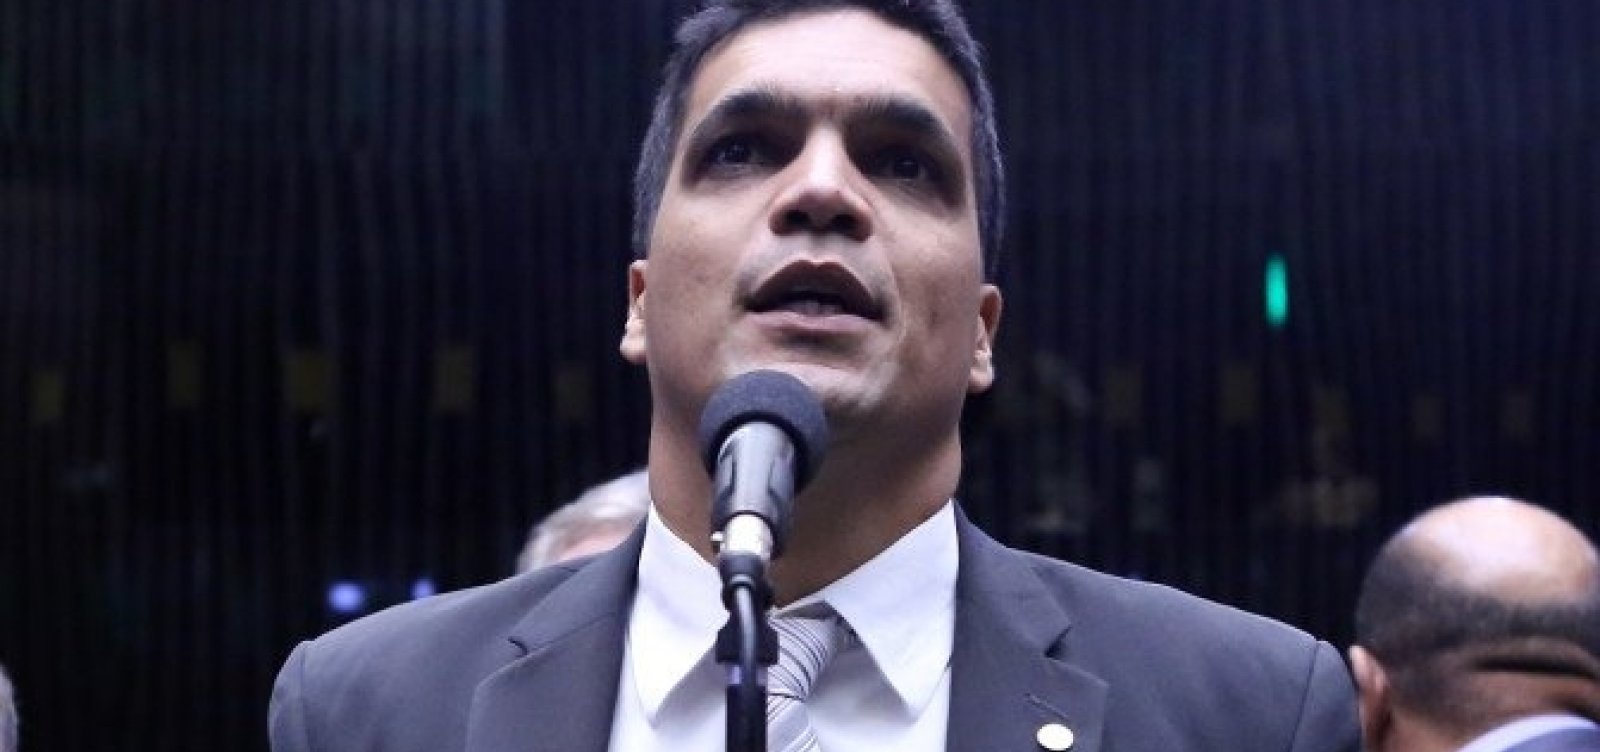 [Daciolo quer roubar eleitores de Bolsonaro, nÃ£o ajudÃ¡-lo, diz dirigente do Patriota]